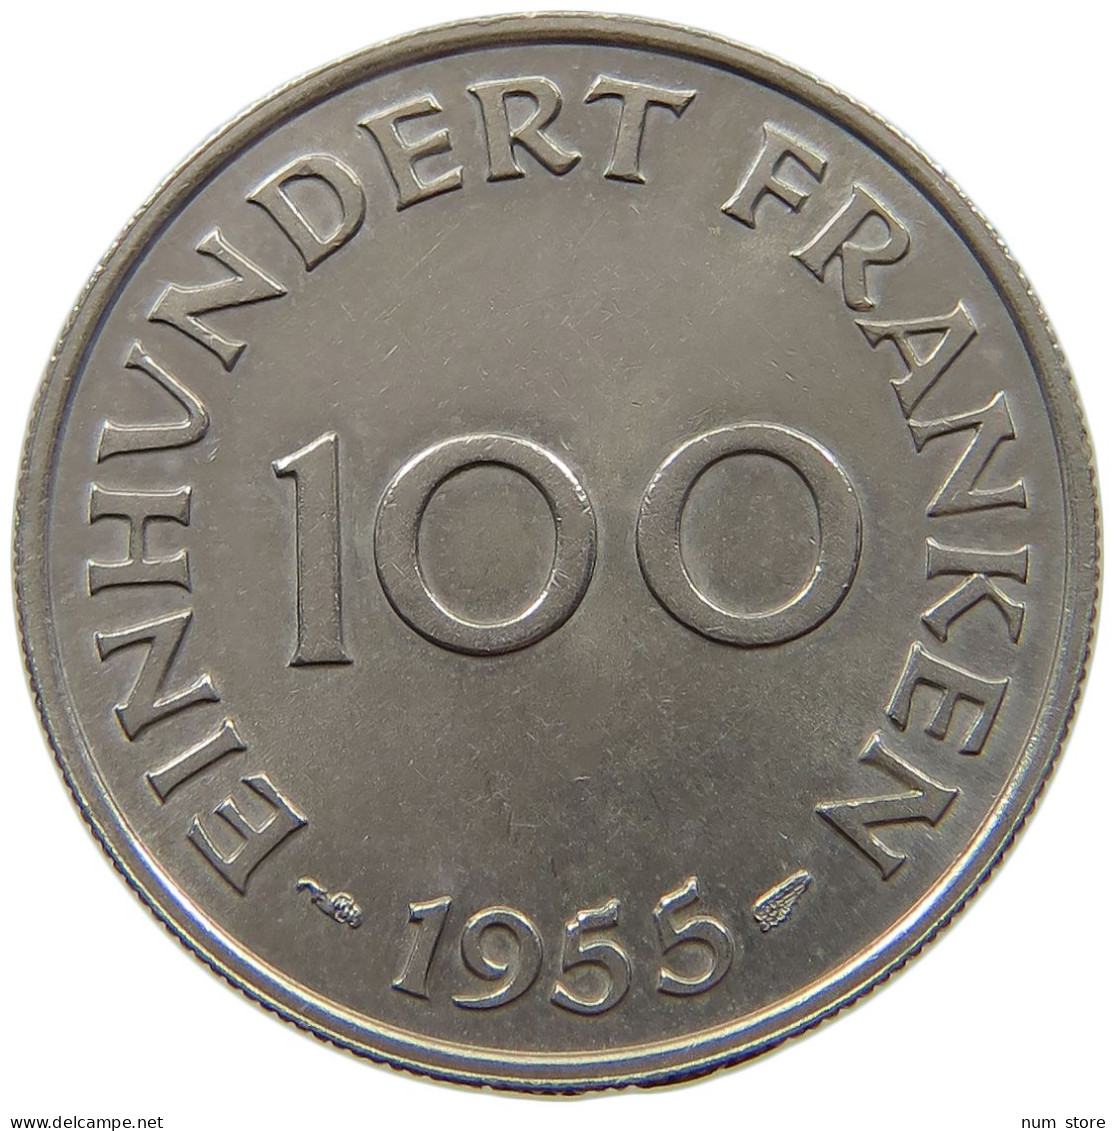 SAARLAND 100 FRANKEN 1955  #a089 0571 - 100 Francos